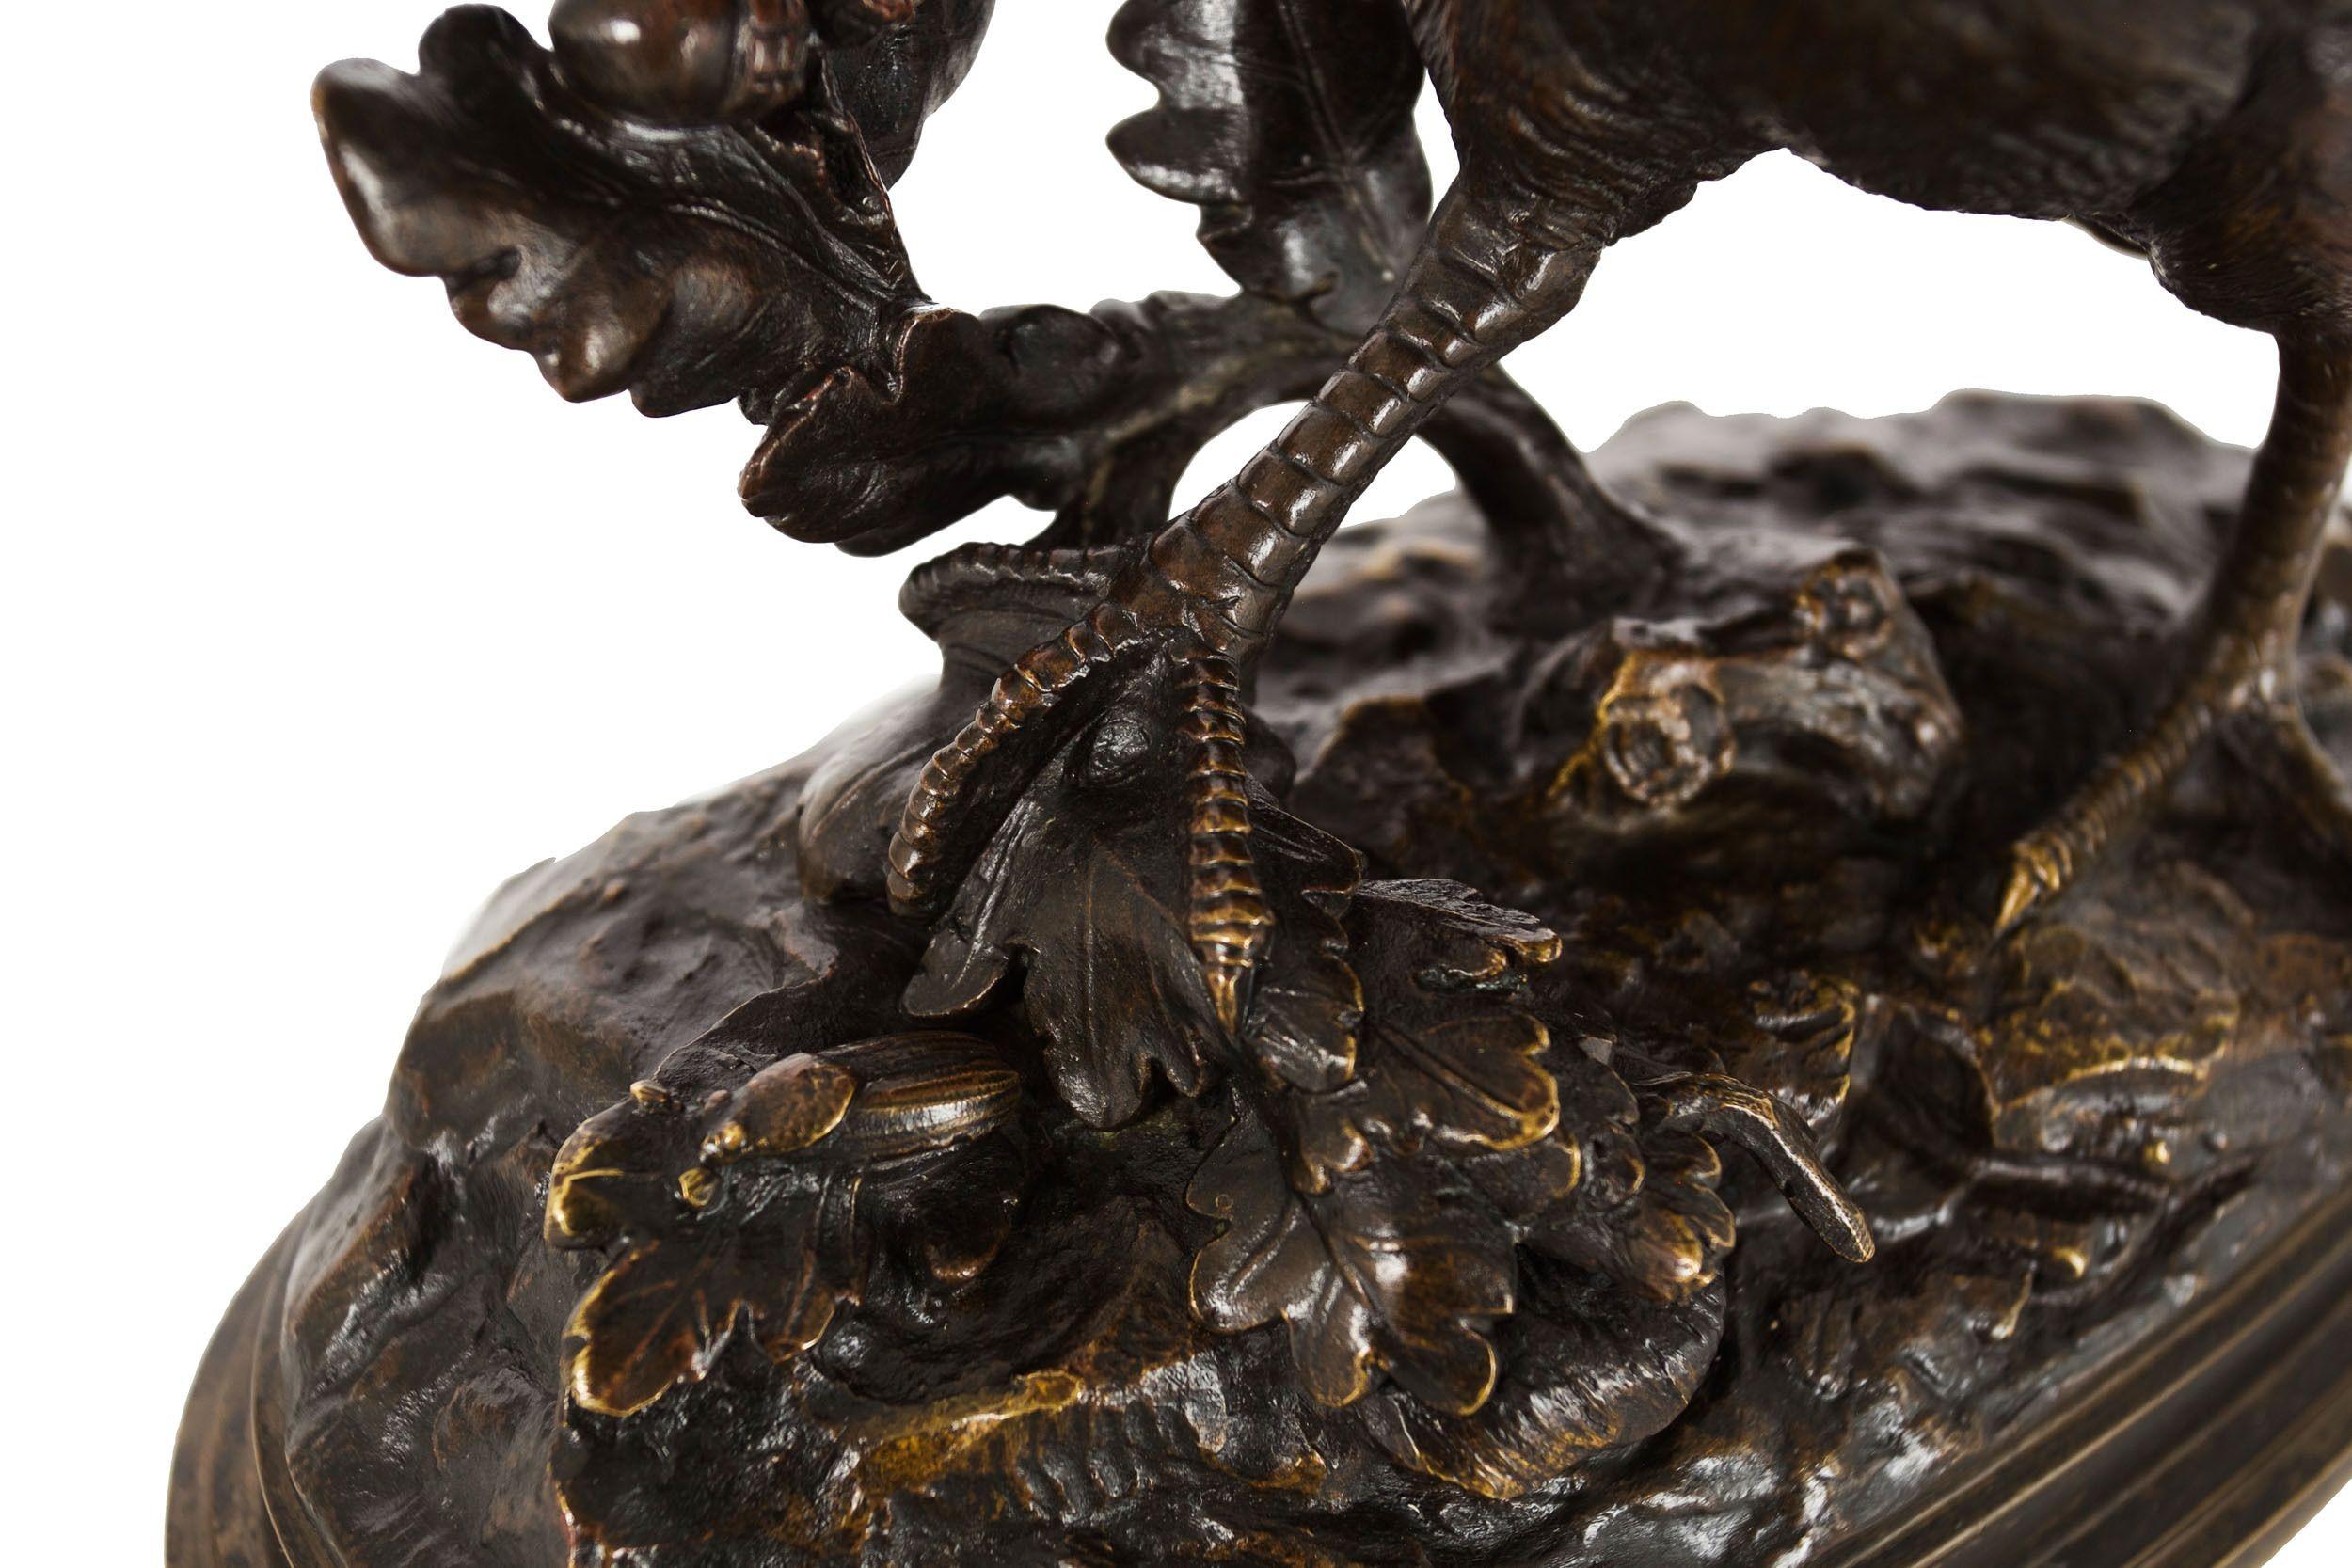 Sculpture en bronze ancien de Paul Édouard Delabrierre représentant une gélinotte en train de marcher 11